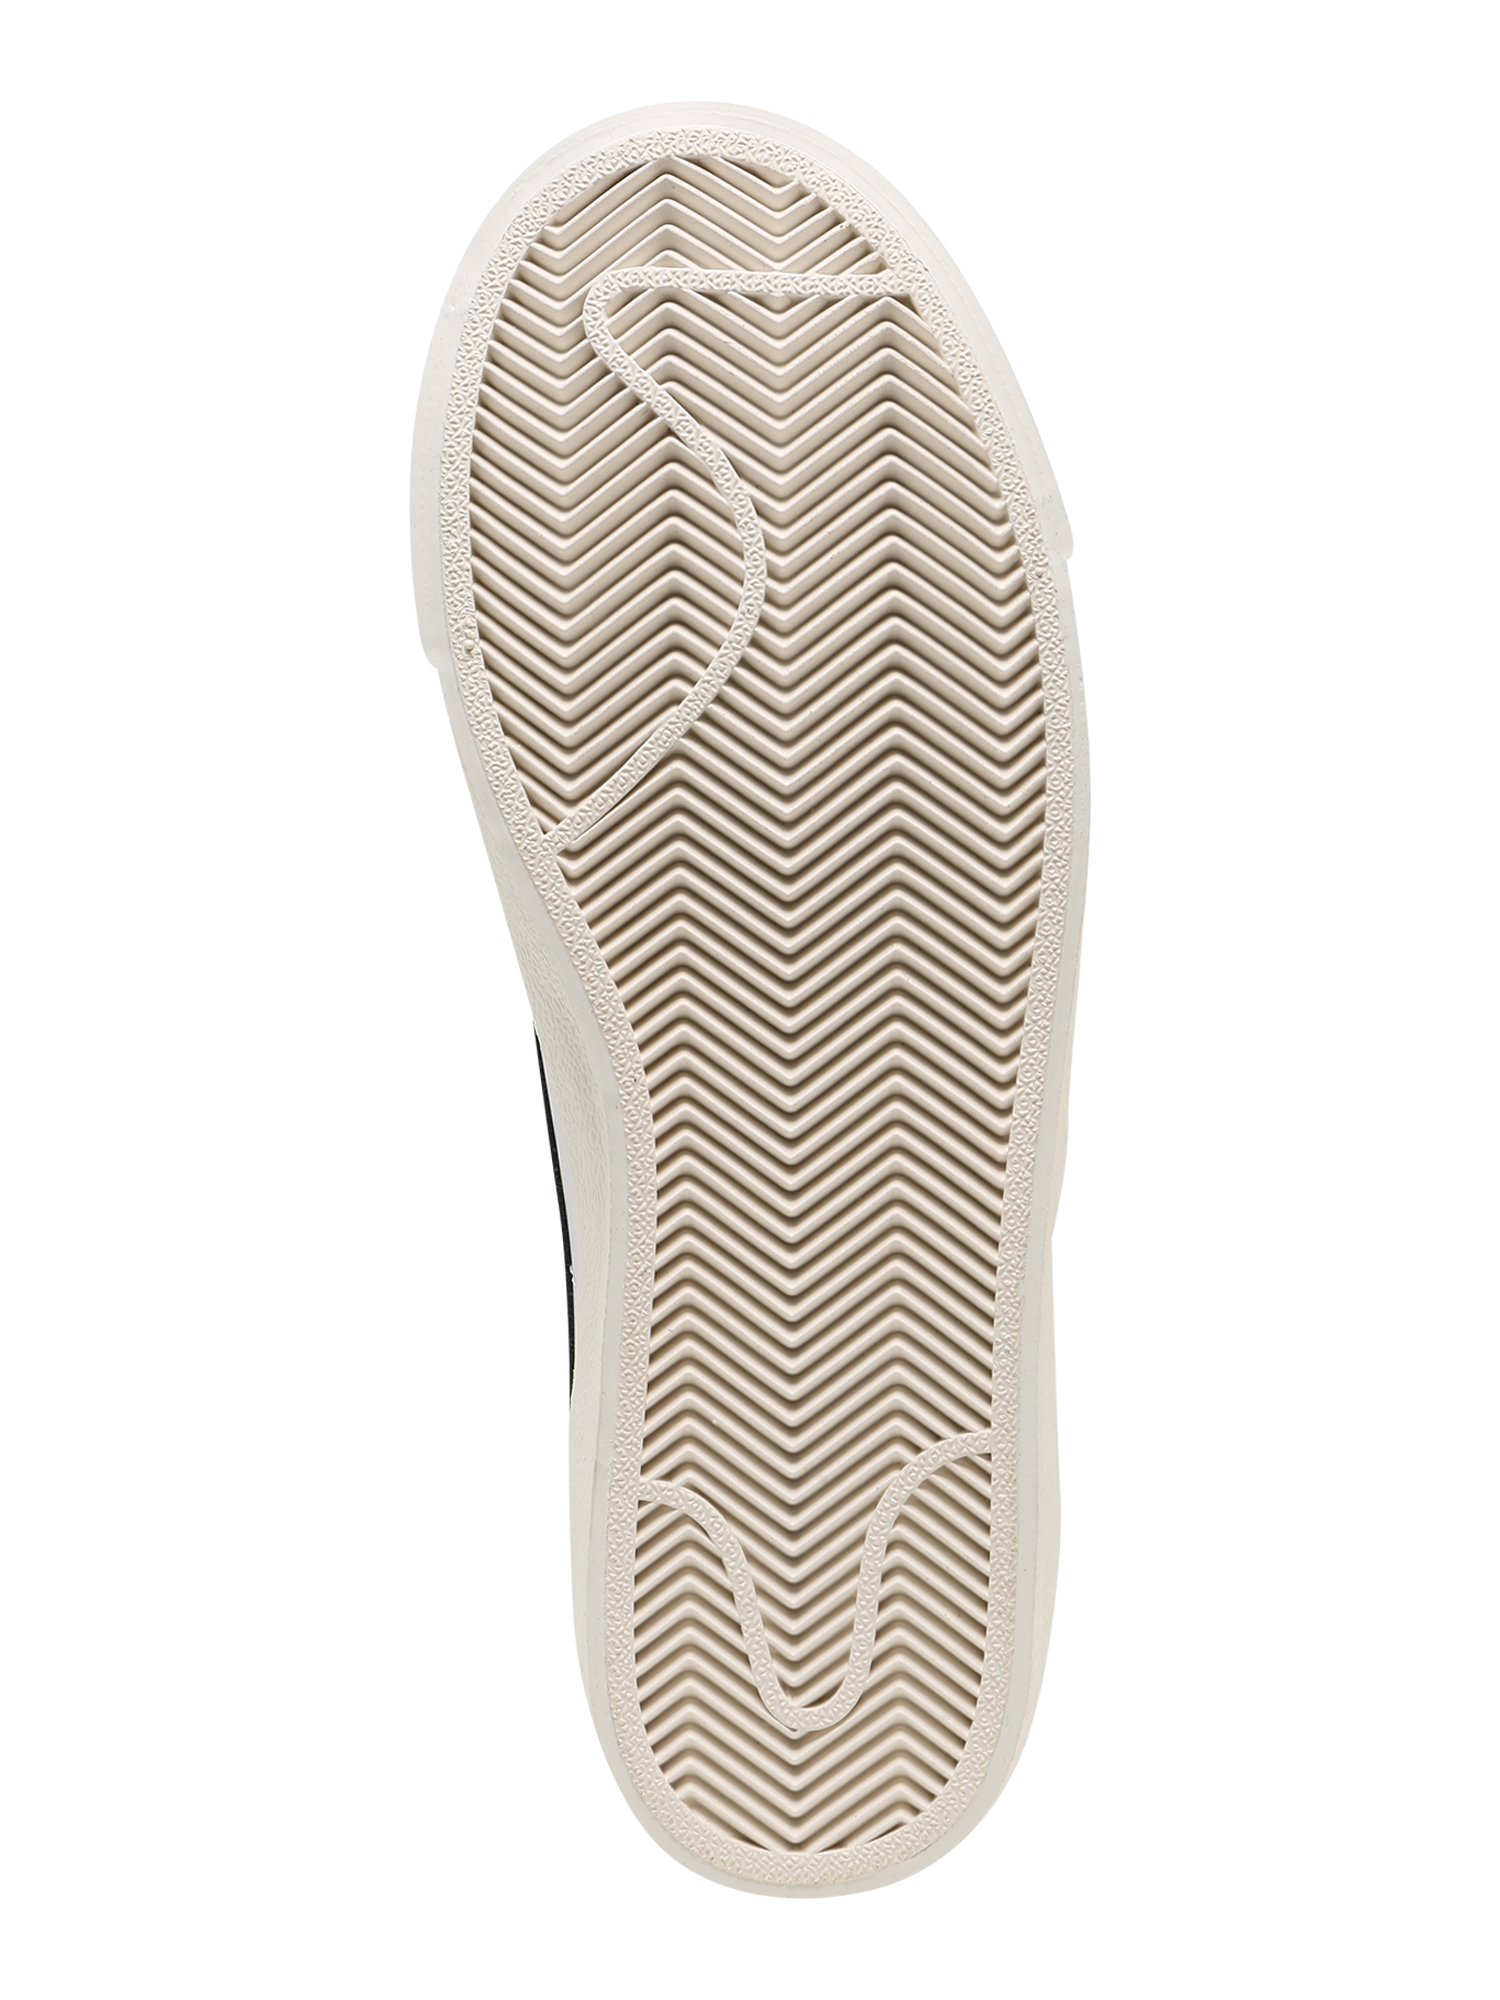 Nike Sportswear Trampki wysokie W BLAZER MID 77 w kolorze Białym 